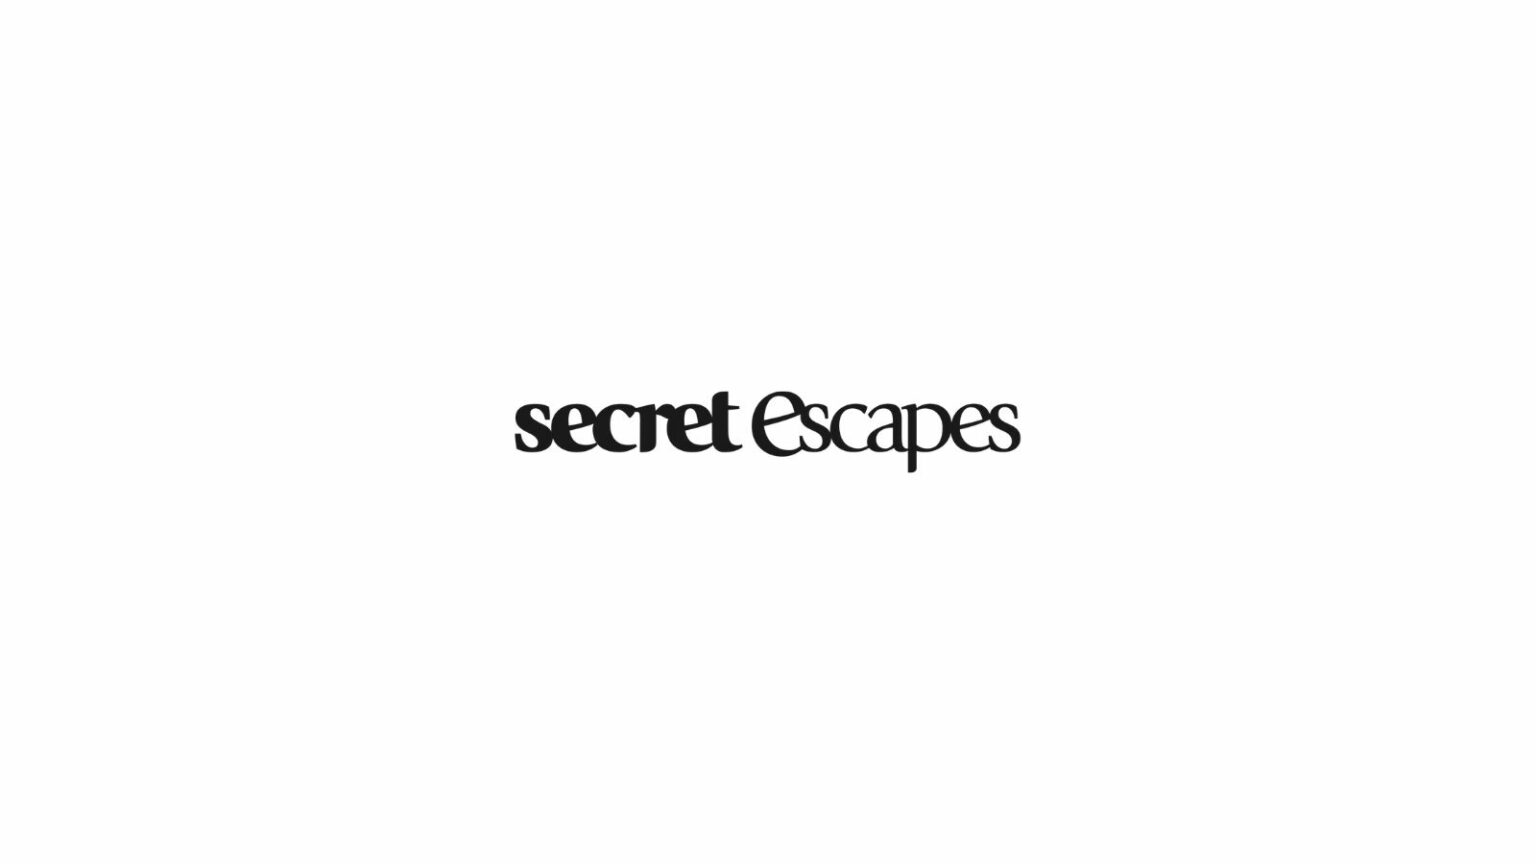 secret escapes travel agency